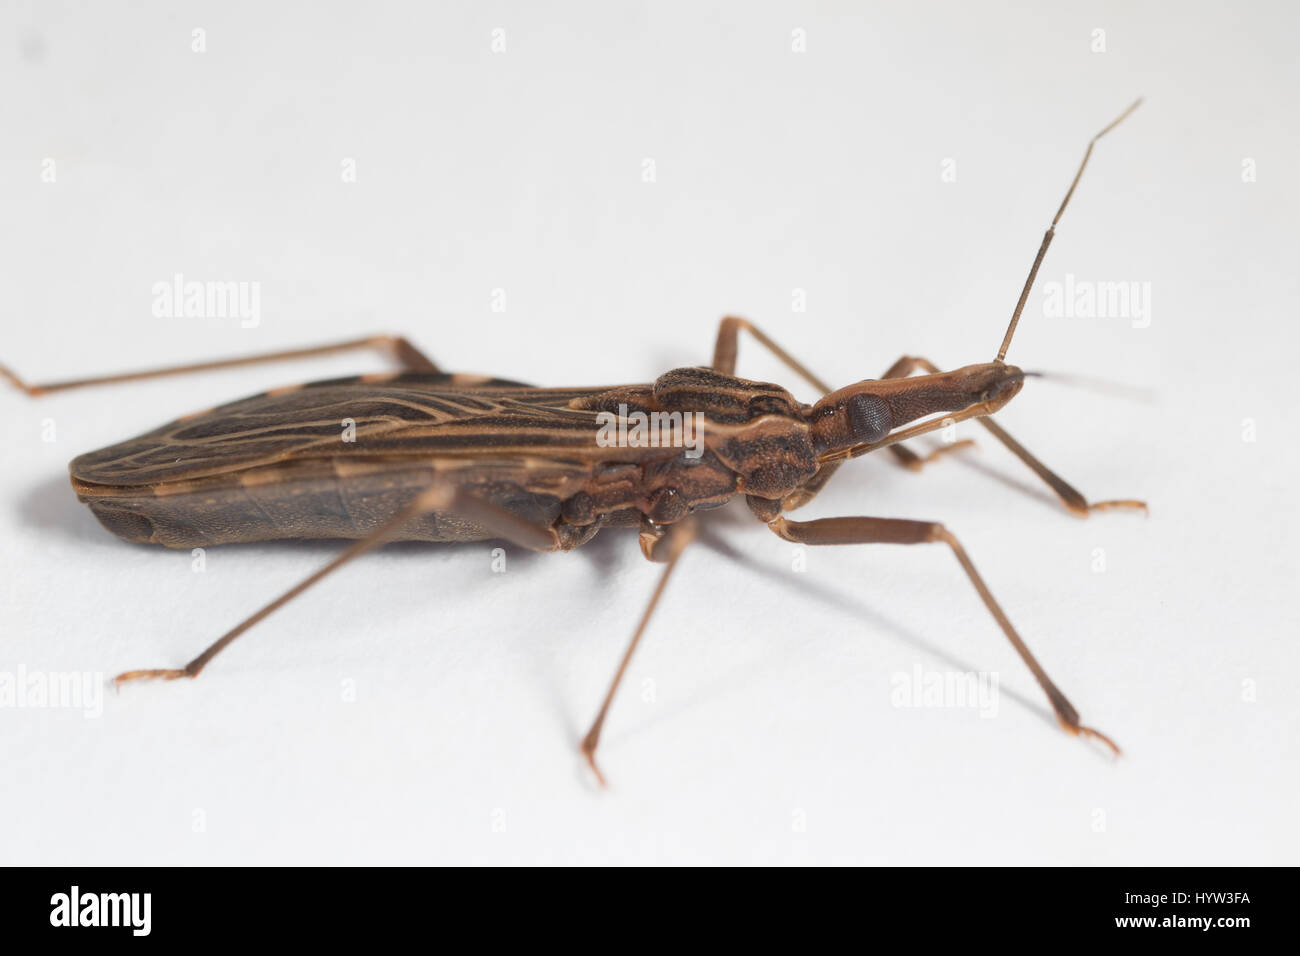 Adulto Rhodnius prolixus (kissing bug) - l'insetto che trasmette il parassita (Trypanosoma cruzi) che causa la malattia di Chagas Foto Stock